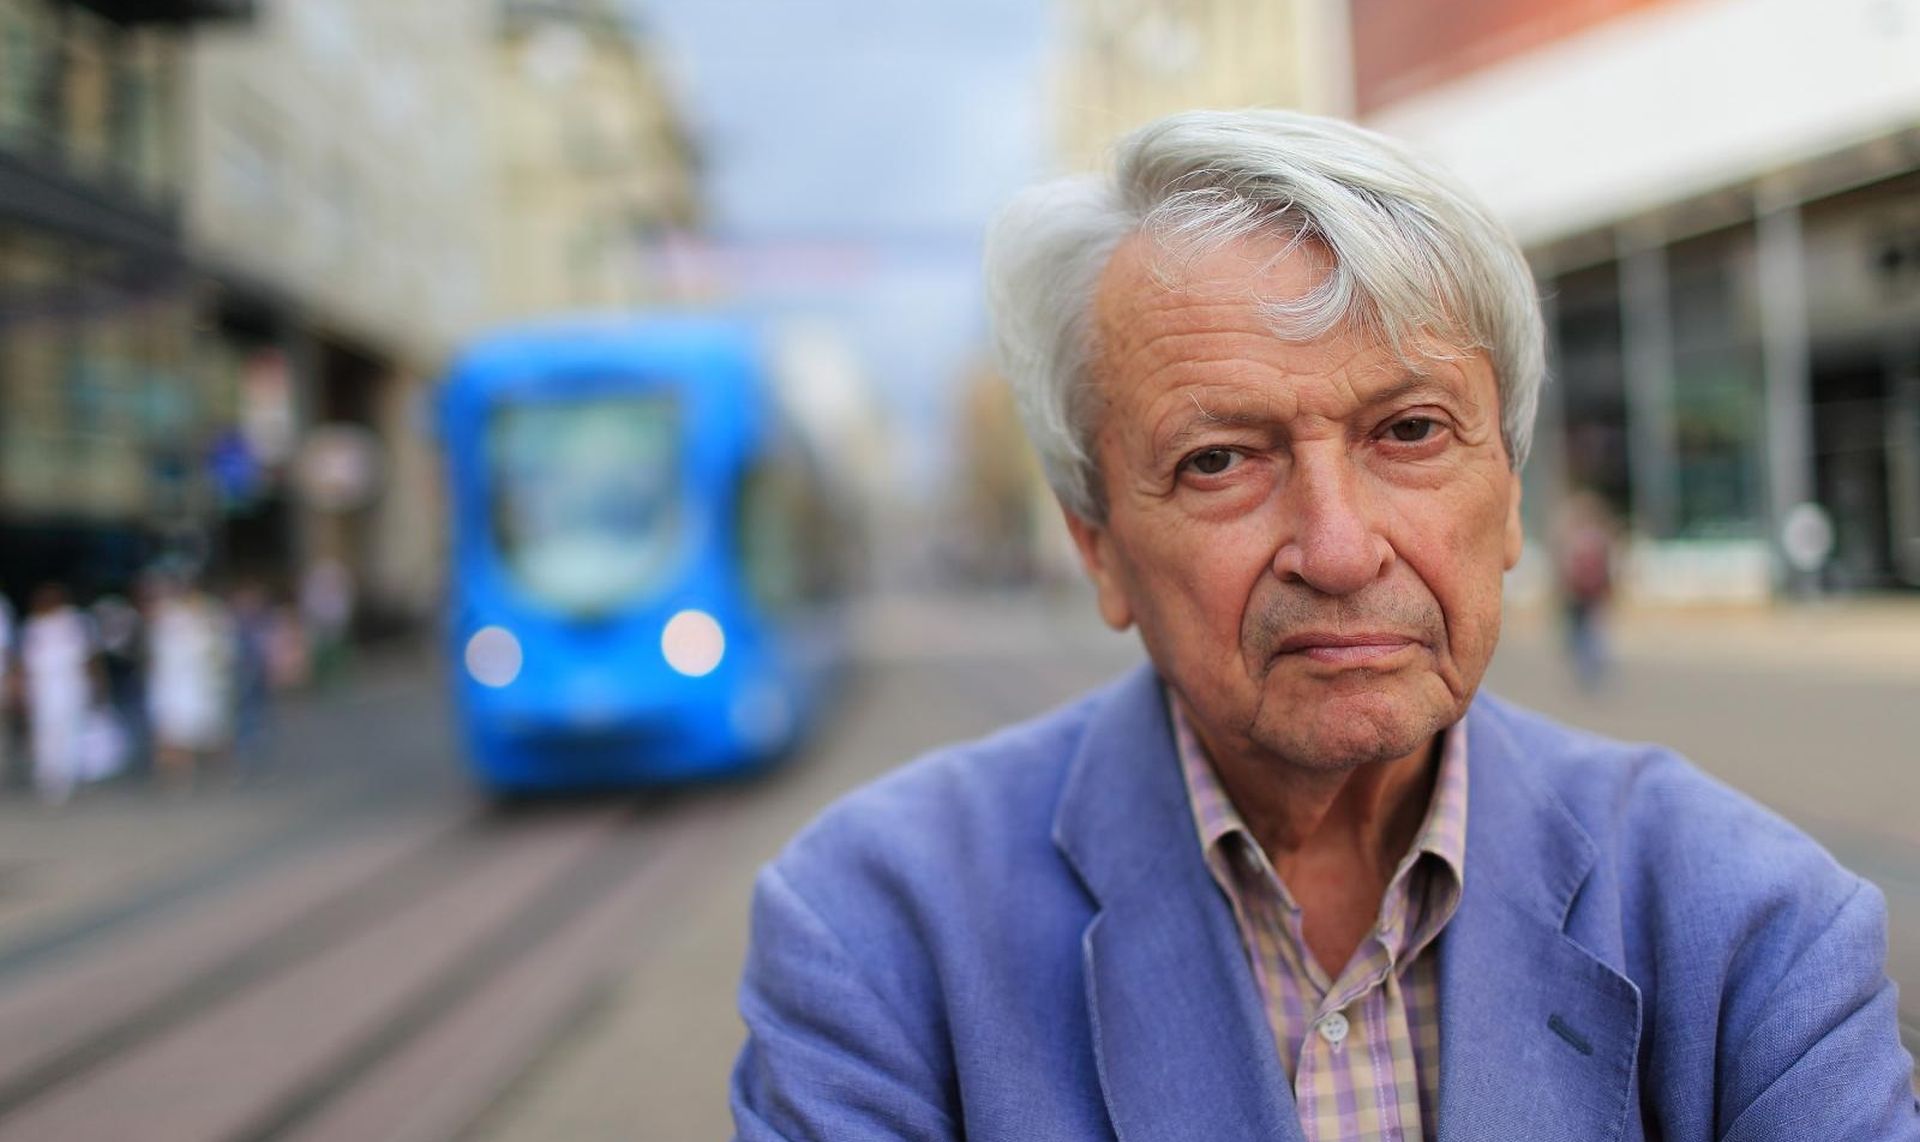 28.08.2013., Zagreb - Predrag Matvejevic, akademik, knjizevnik i publicist. Photo: Jurica Galoic/PIXSELL